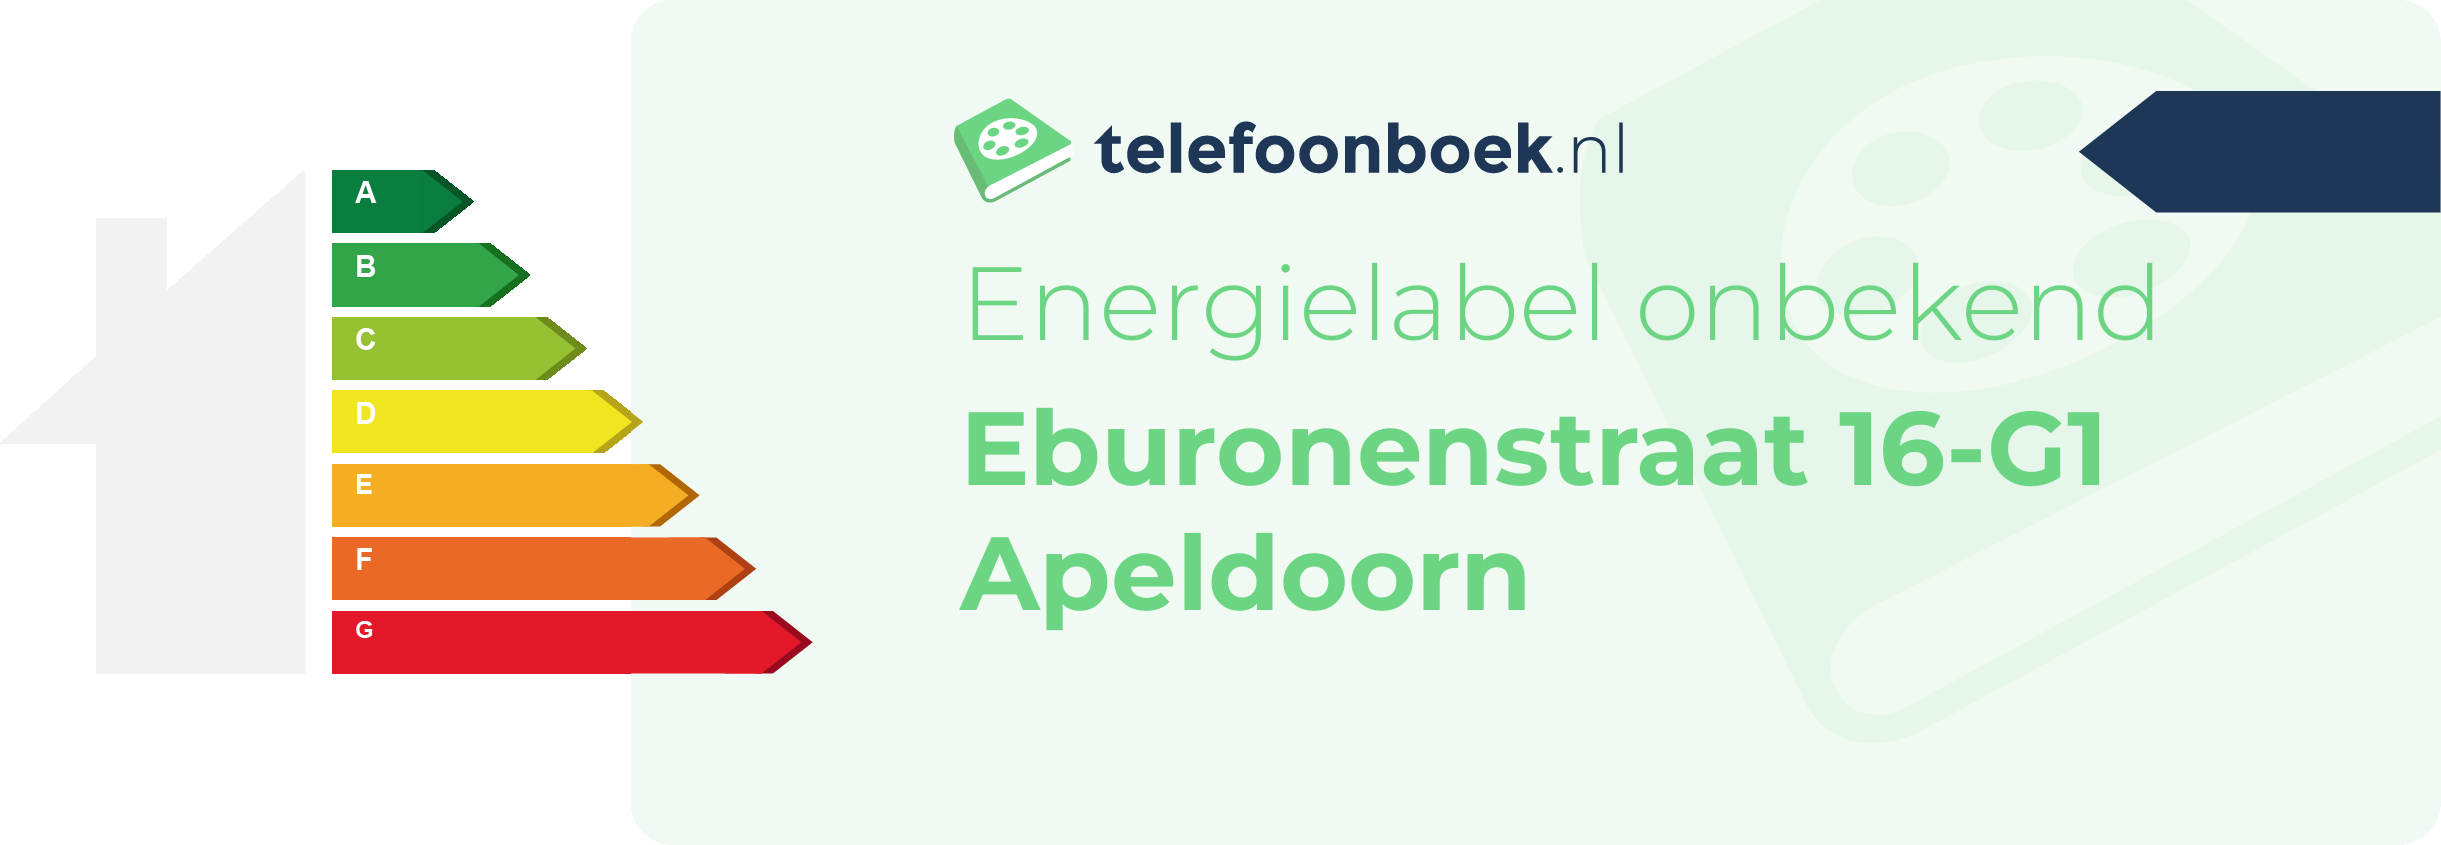 Energielabel Eburonenstraat 16-G1 Apeldoorn